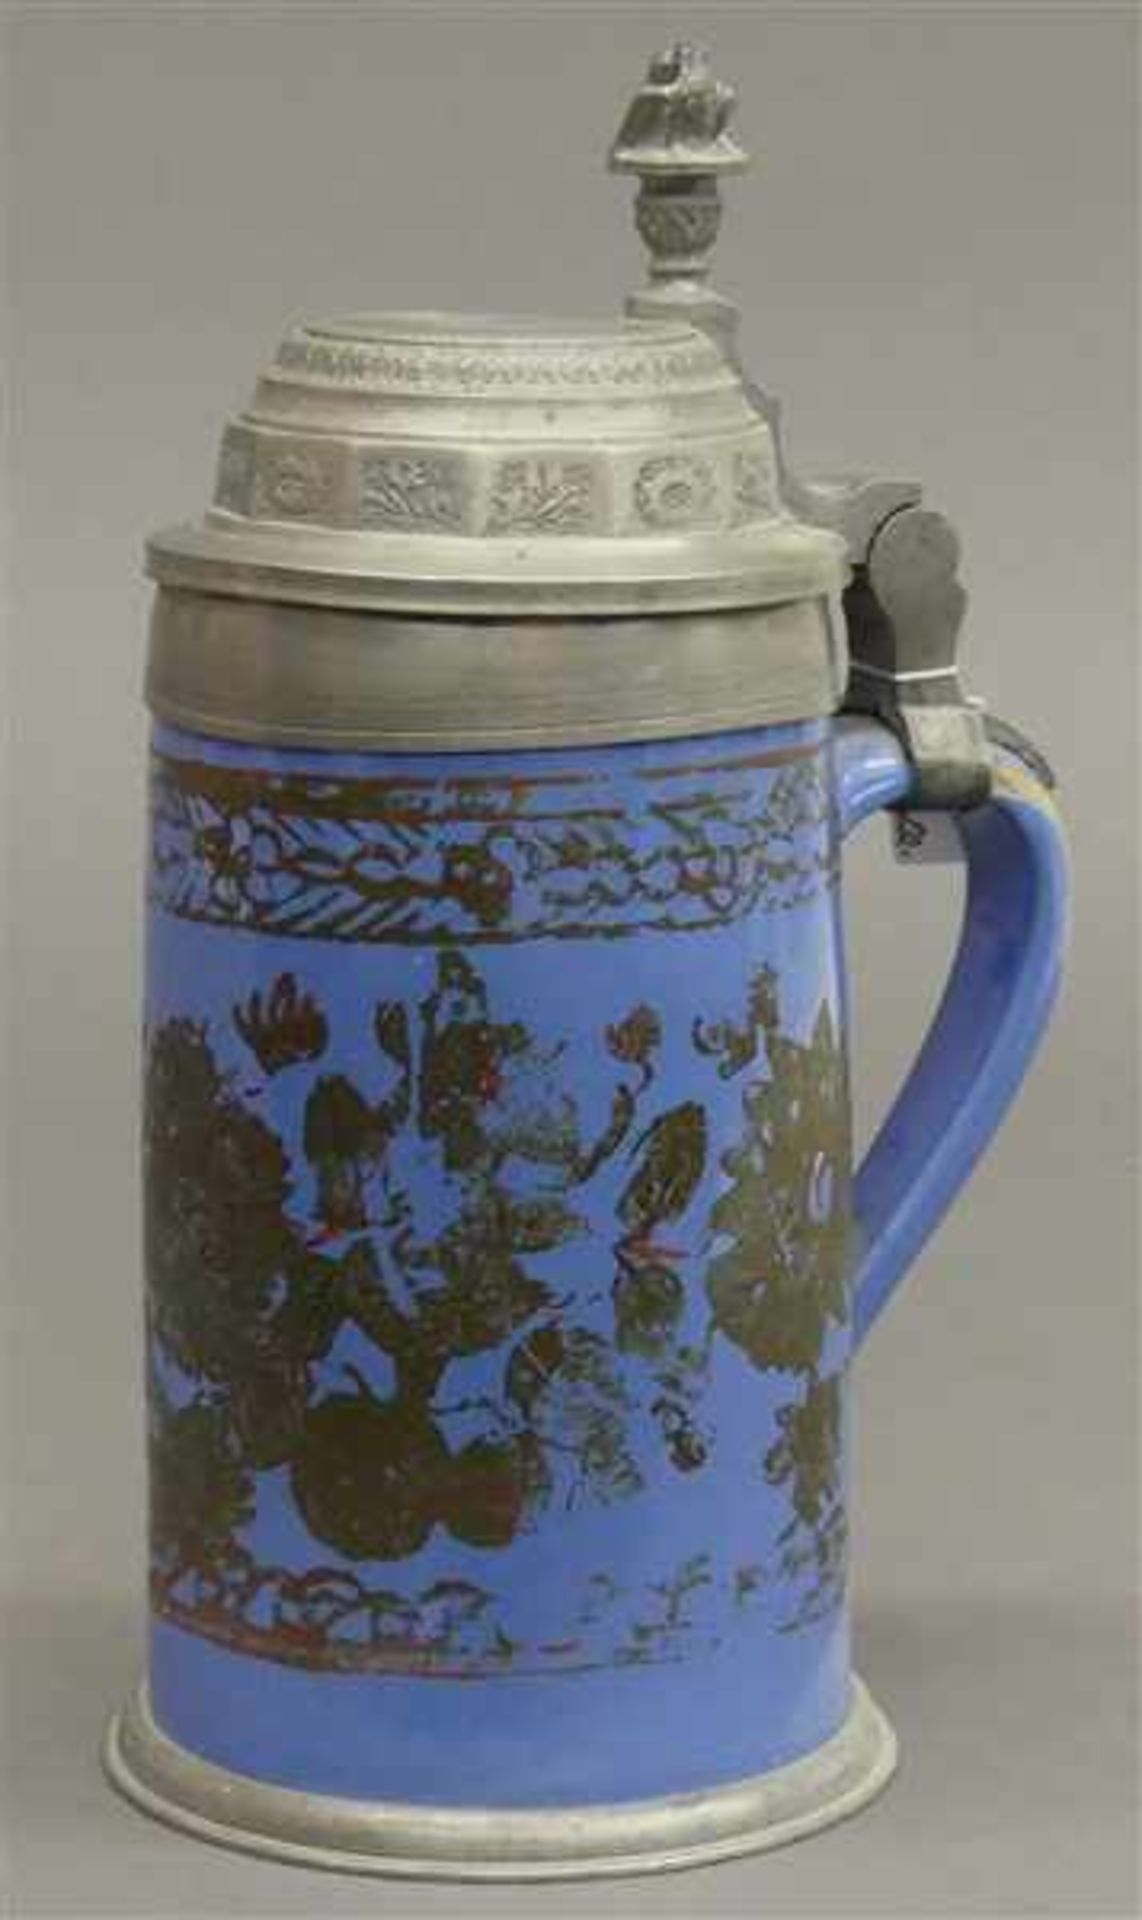 Fayencekrug, 19. Jh.blauer Fond, Goldmalerei, berieben, Zinngarnitur, h 25 cm,- - -20.00 % buyer's